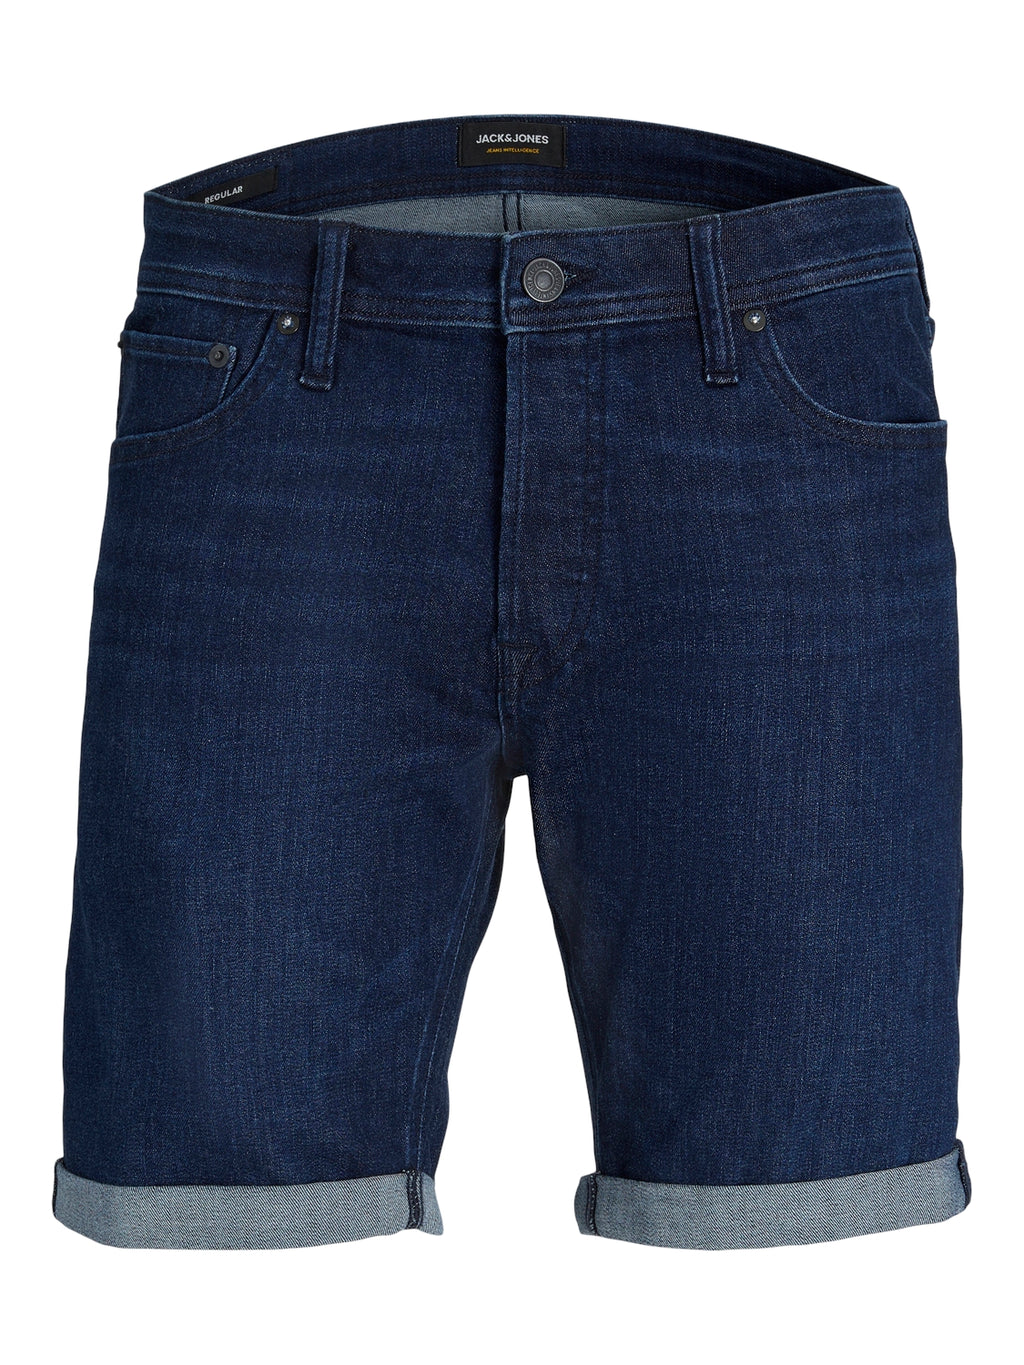 Jack & Jones Rick AM 610 Denim Shorts Solid Dark Blue - Raw Menswear